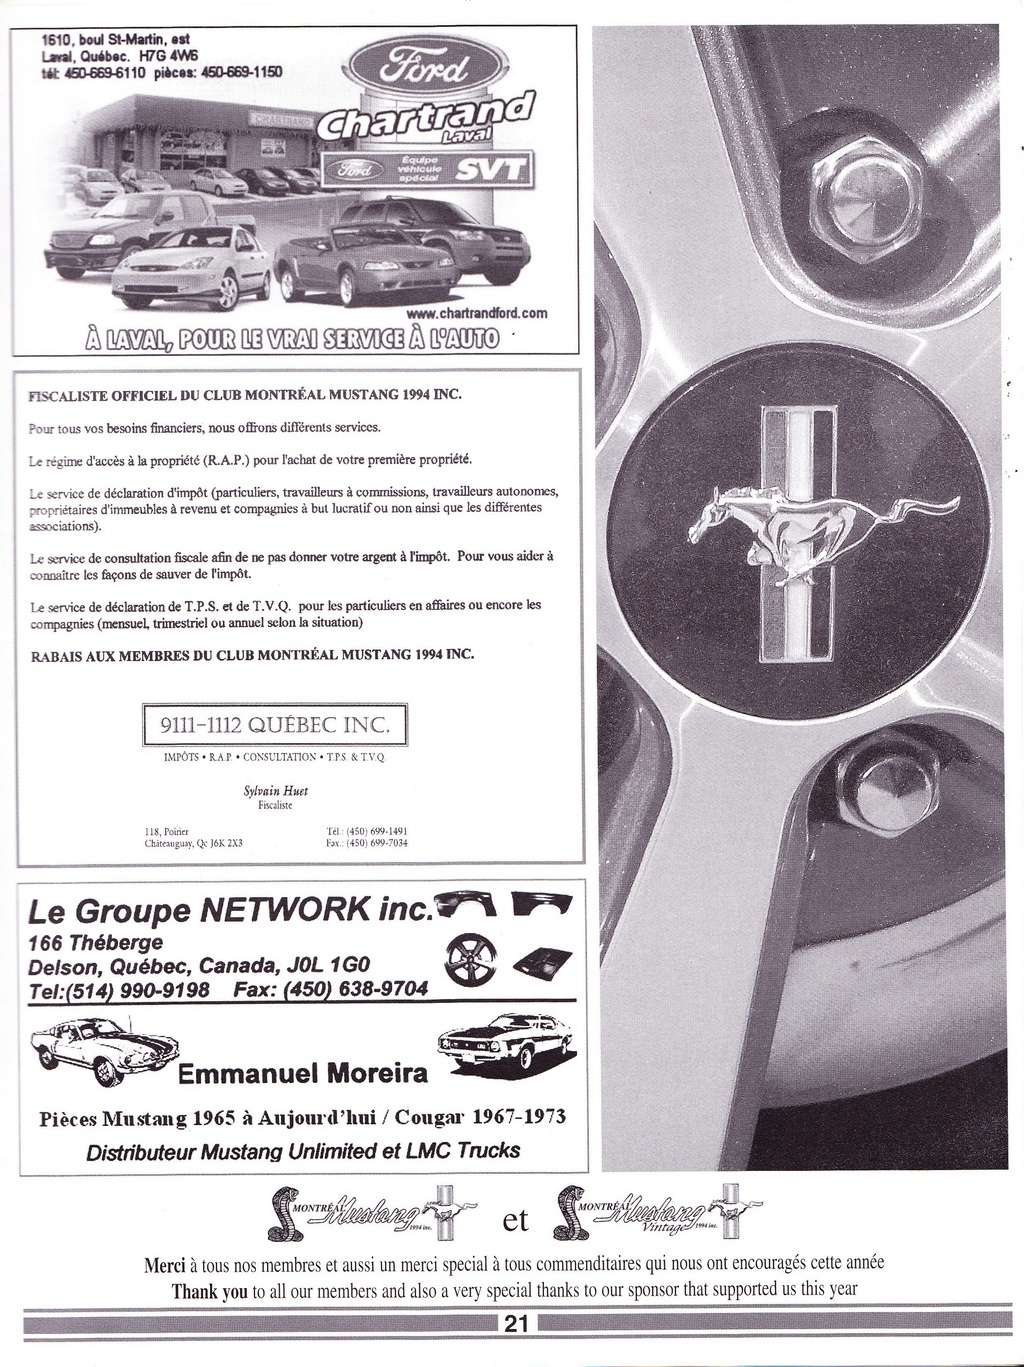 Montréal Mustang dans le temps! 1981 à aujourd'hui (Histoire en photos) - Page 12 La_lyg96